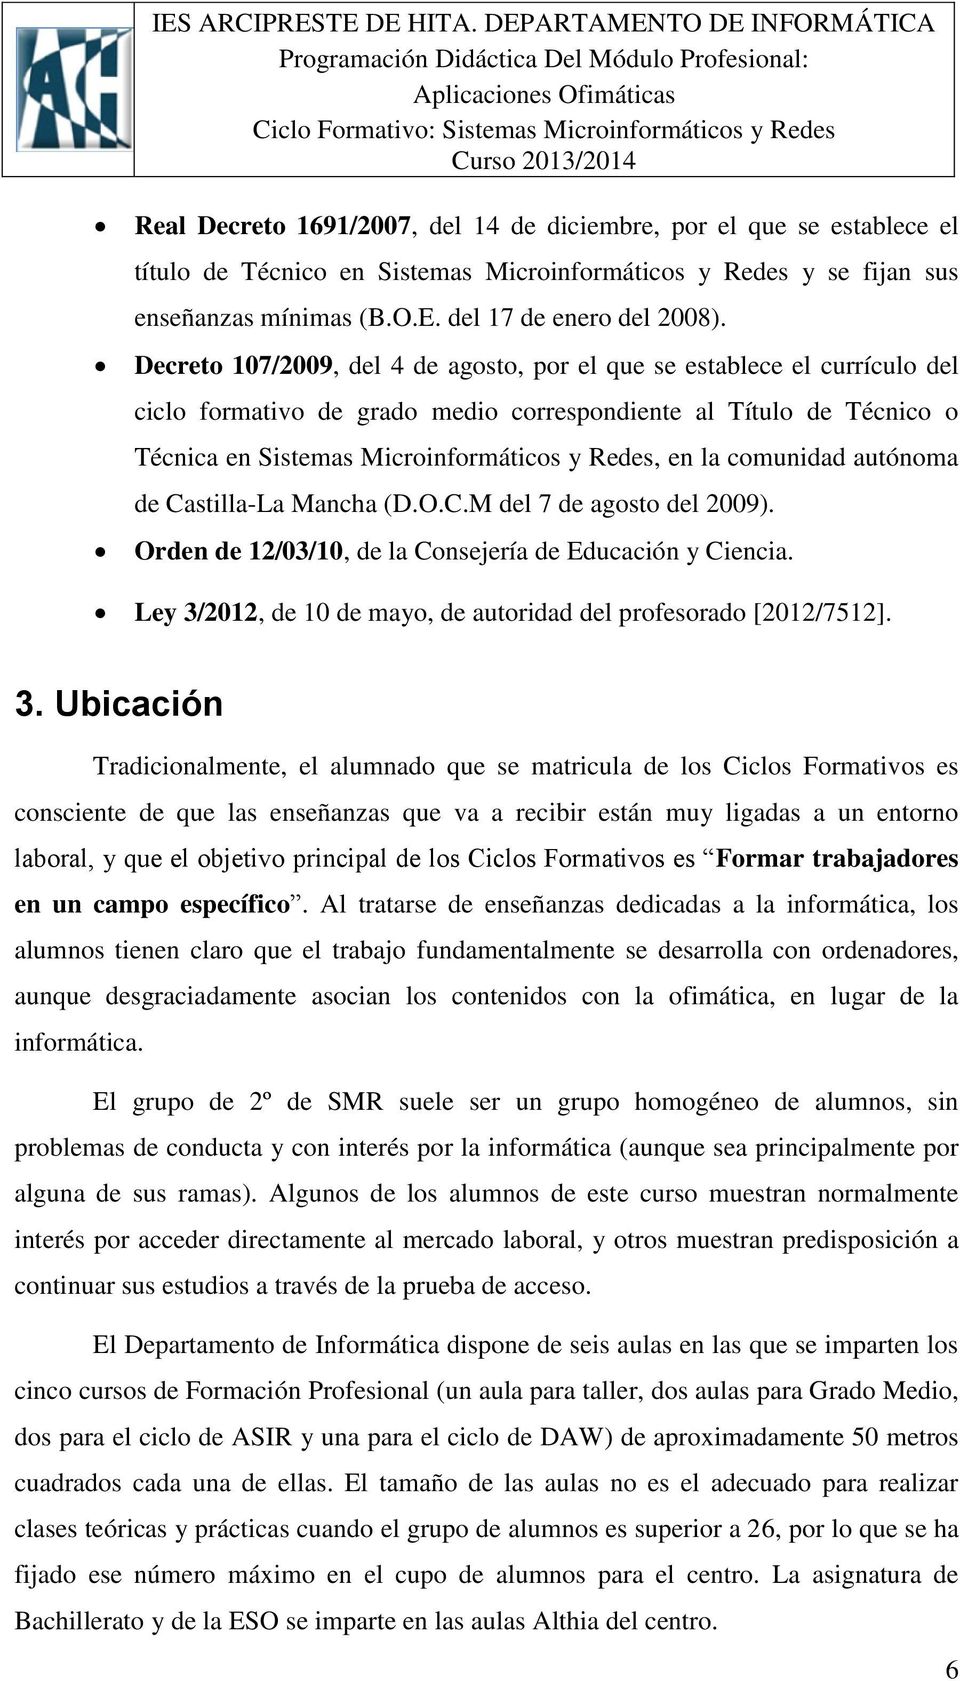 comunidad autónoma de Castilla-La Mancha (D.O.C.M del 7 de agosto del 2009). Orden de 12/03/10, de la Consejería de Educación y Ciencia.